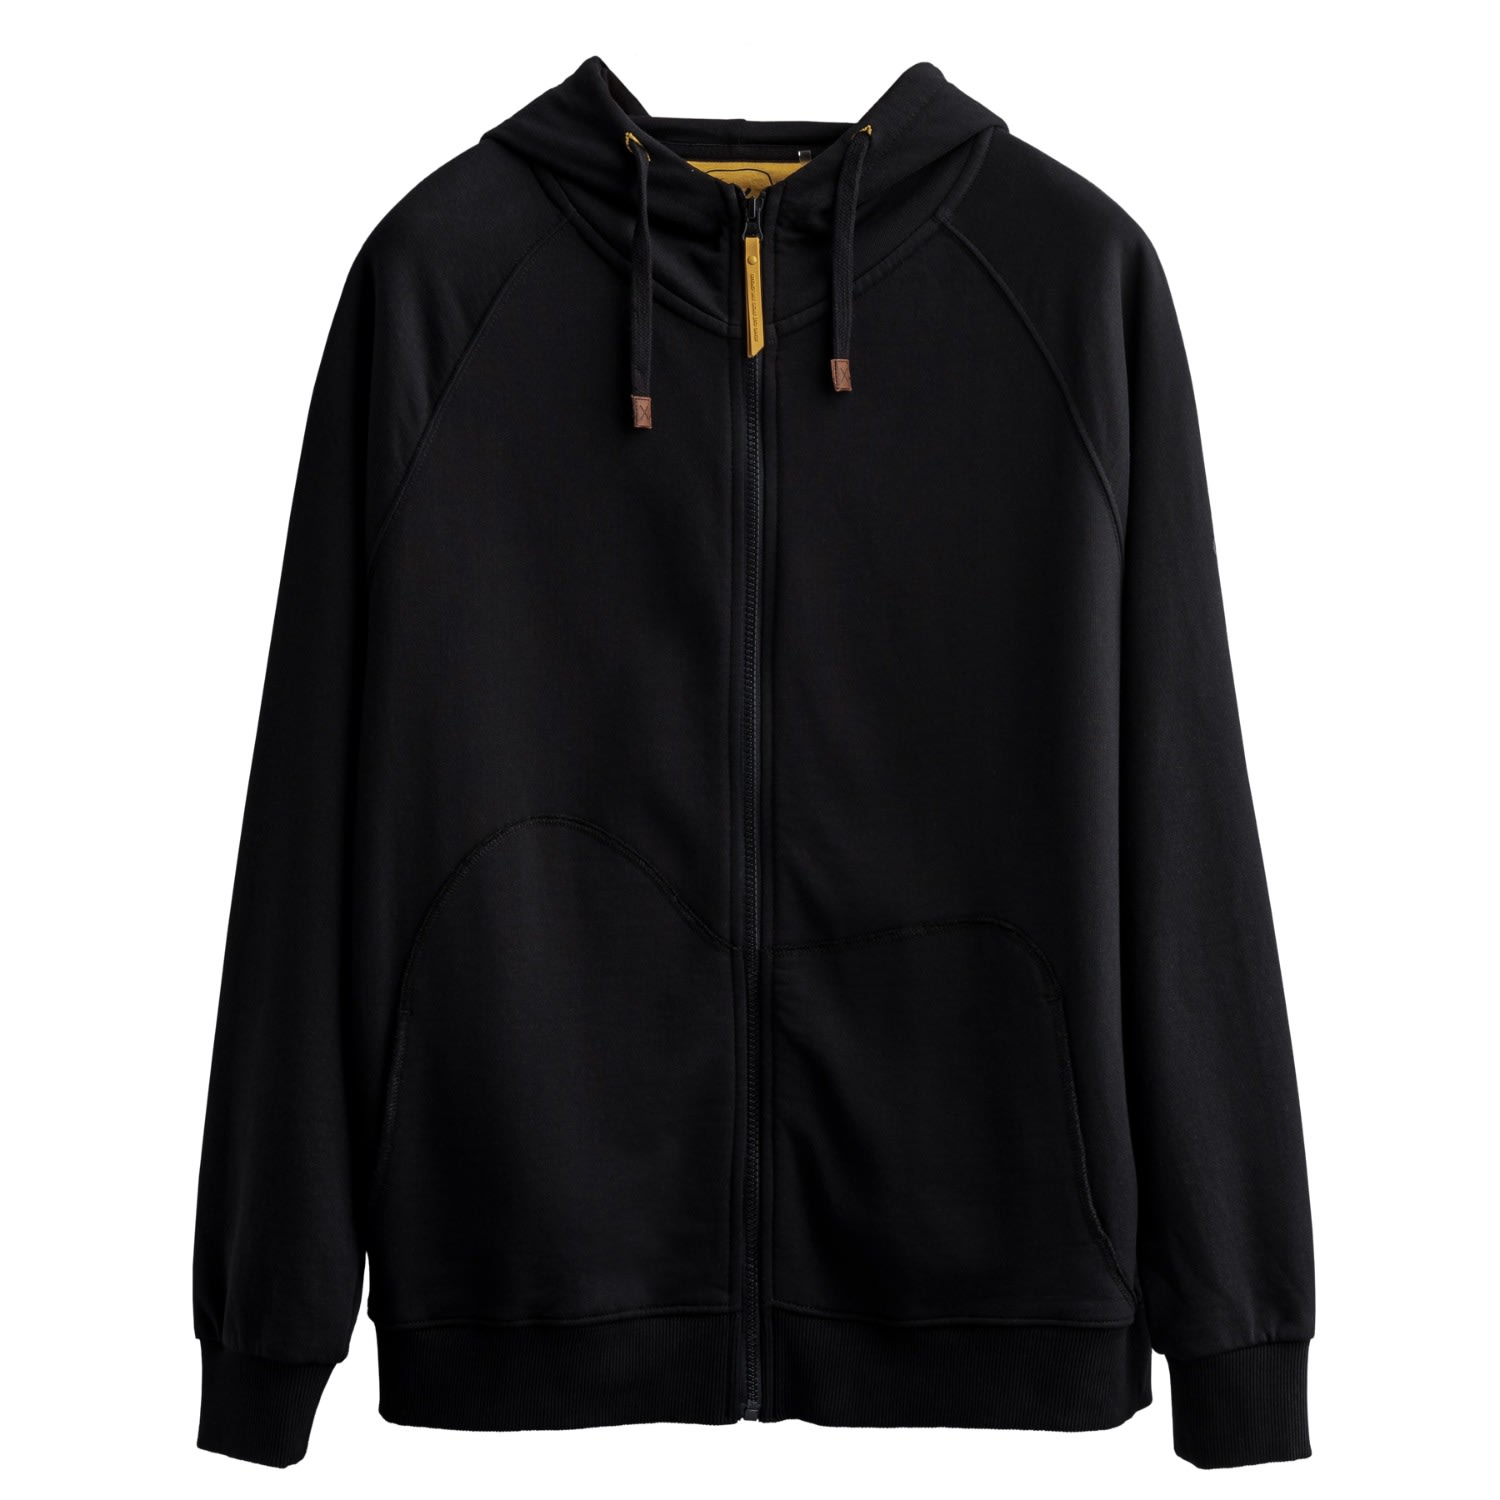 Men's Black Unisex Design Zip Hoodie Sweatshirt - Zipper - Tar Extra Small KAFT